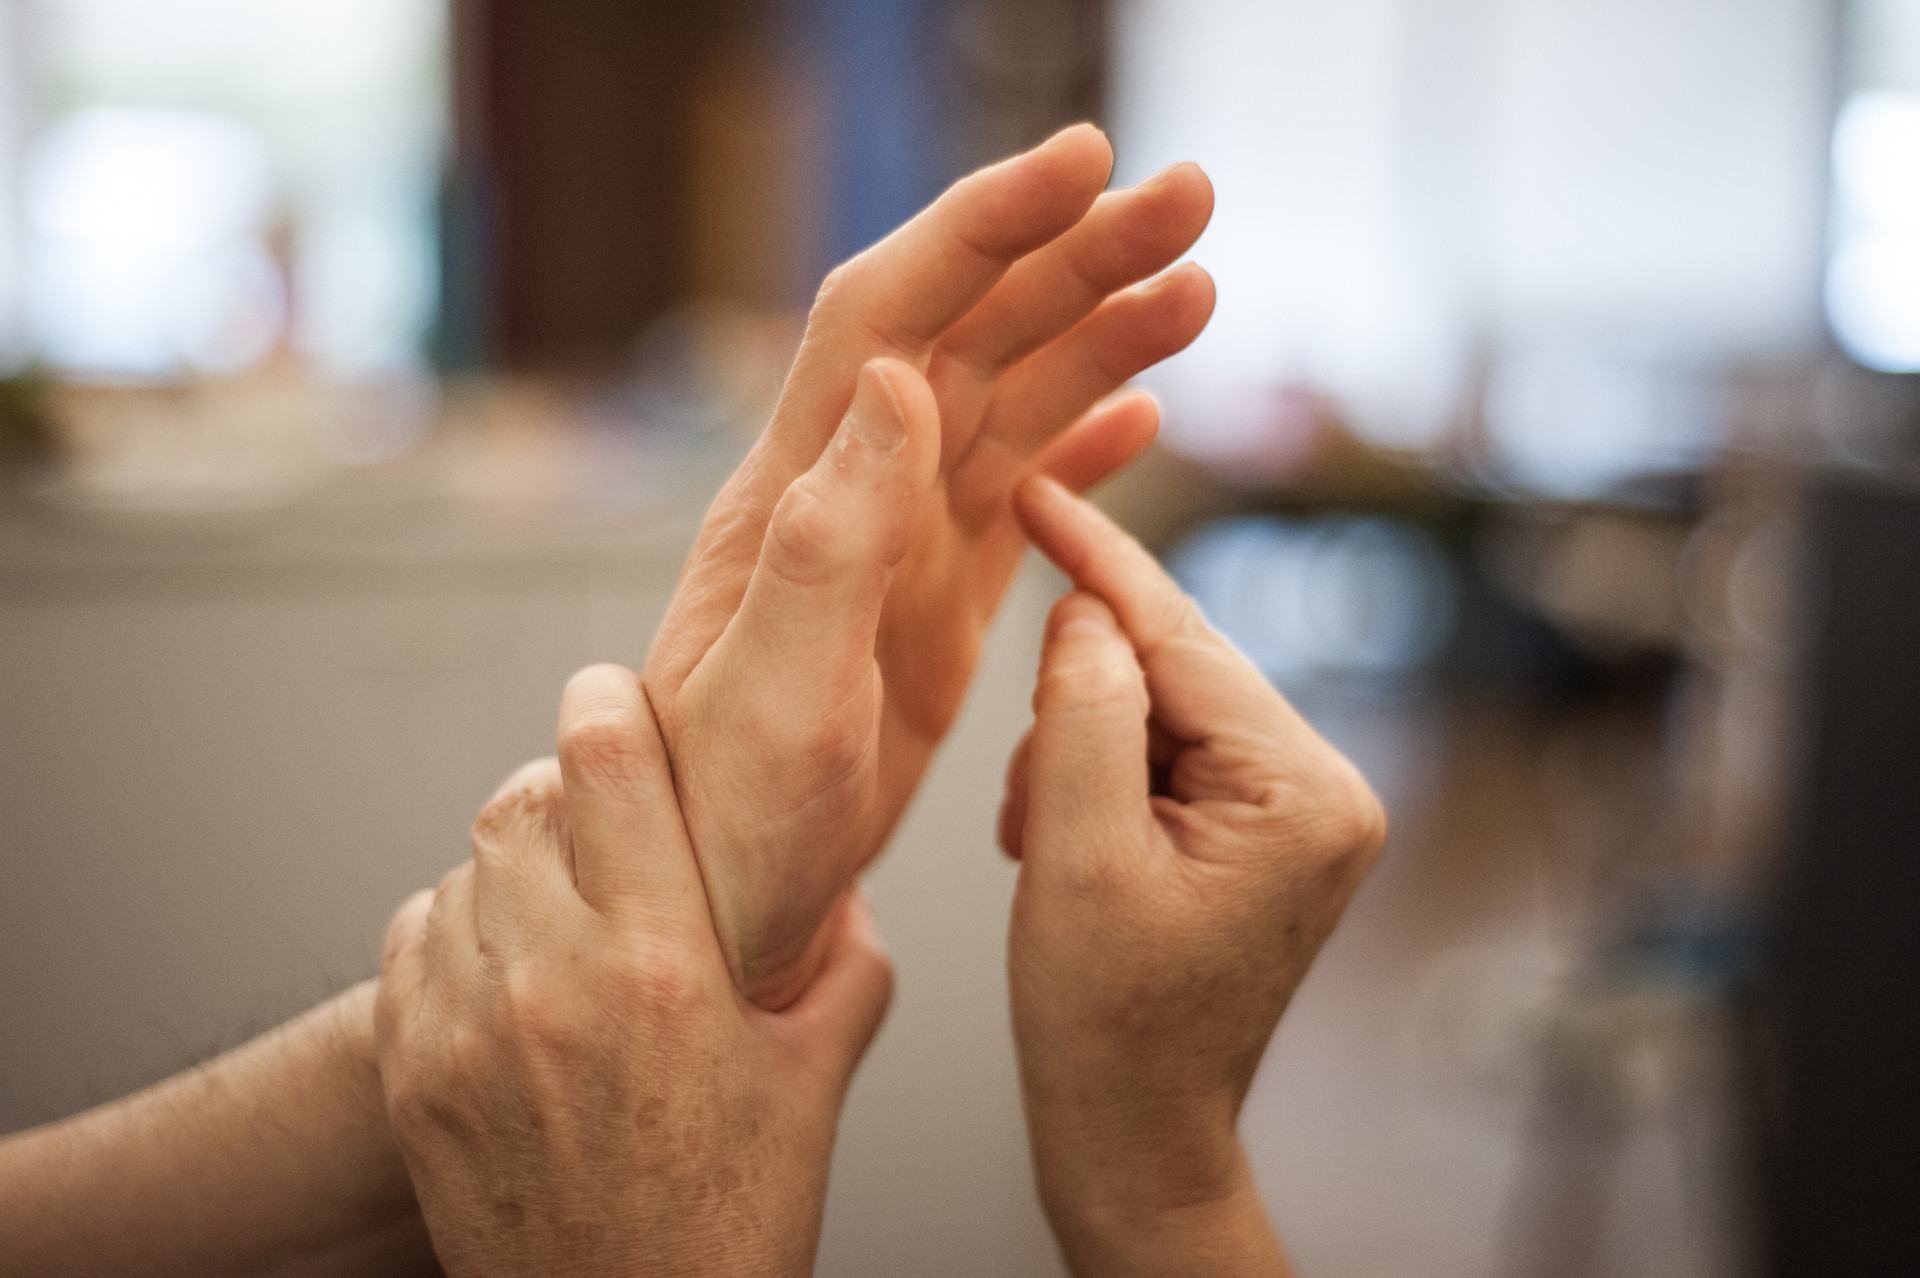 Le mani di due persone che comunicano con il metodo Malossi. Una mano è aperta, mentre un'altra persona usa una mano per reggerla e l'altra per toccarla e comunicare. 